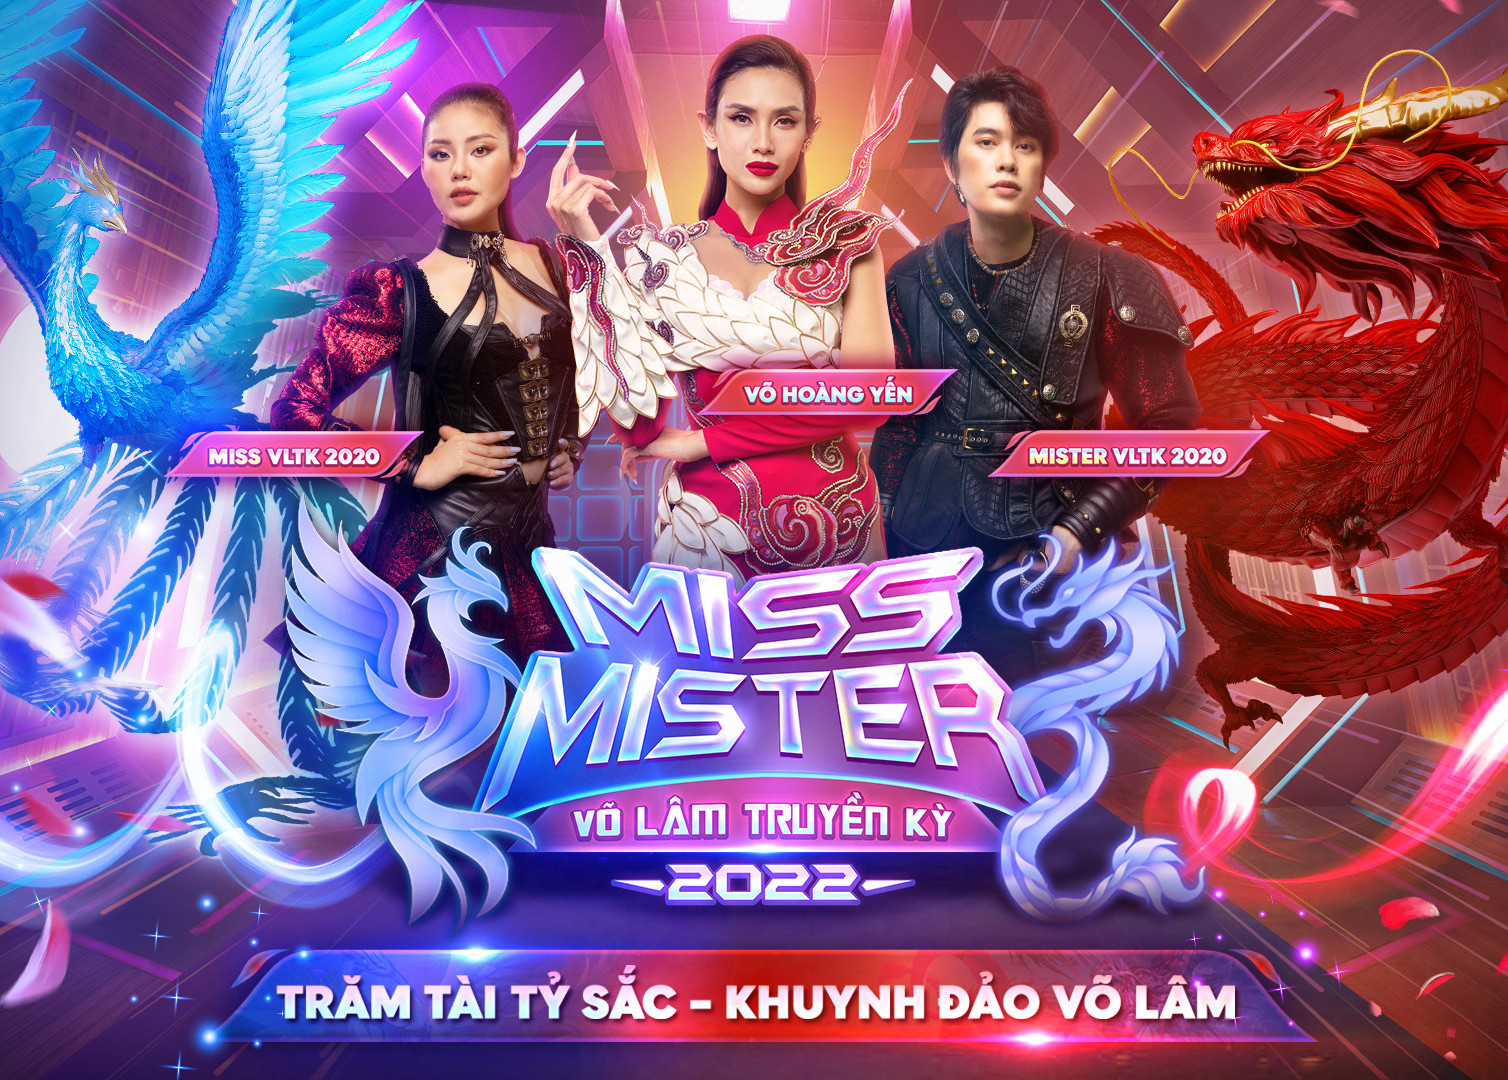 Sàn đấu tài - sắc Miss & Mister Võ Lâm Truyền Kỳ 2022 trở lại với giải thưởng khủng